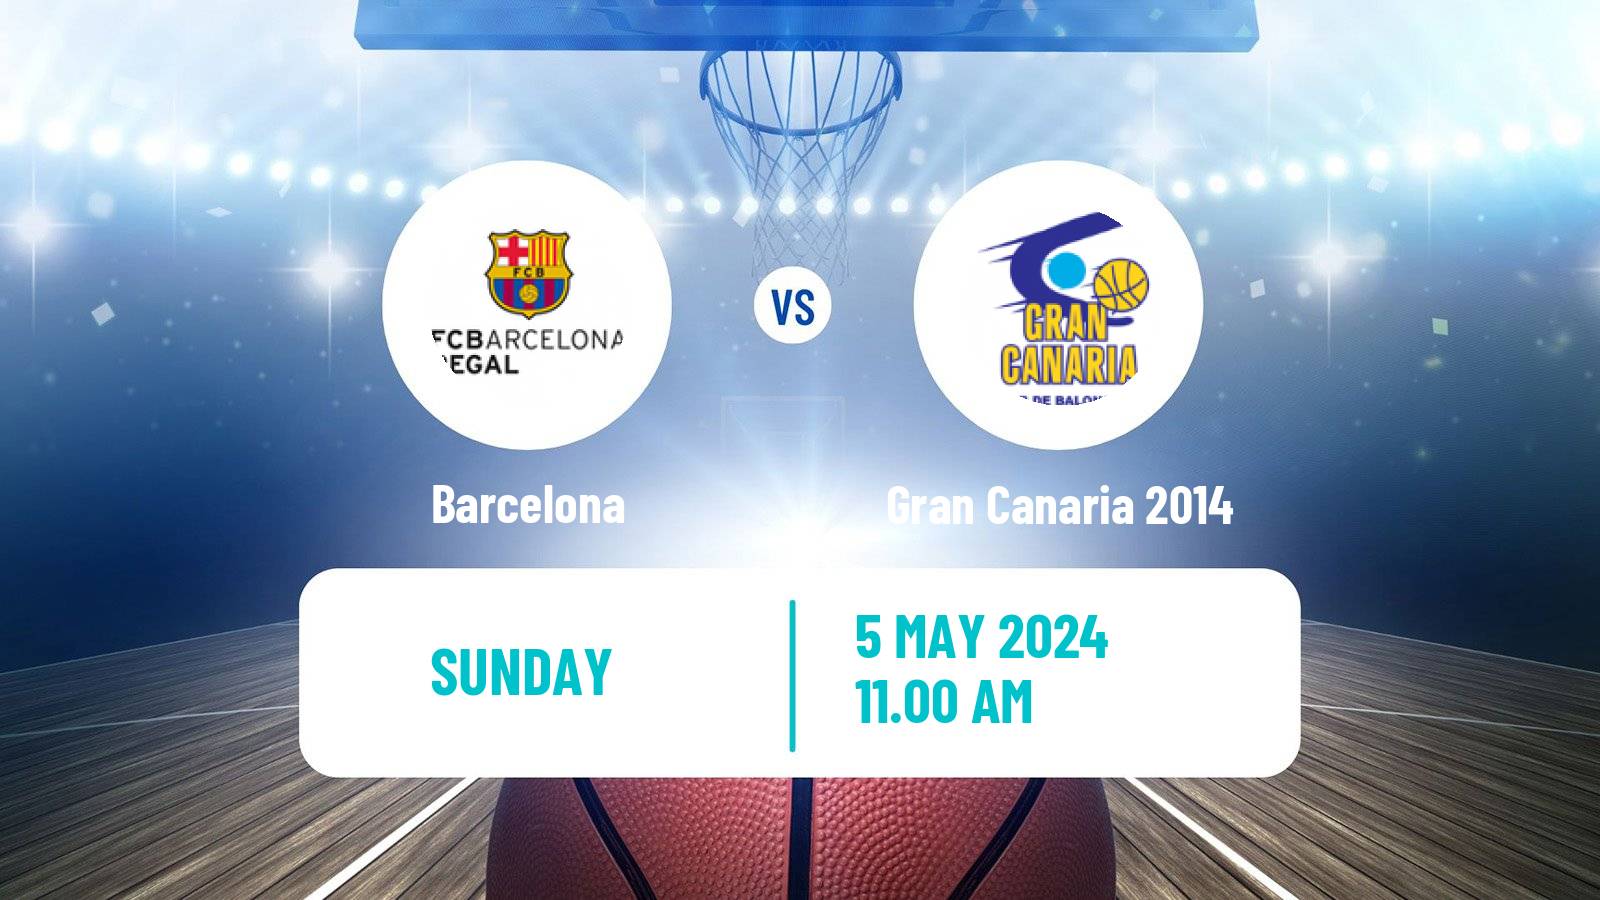 Basketball Spanish ACB League Barcelona - Gran Canaria 2014